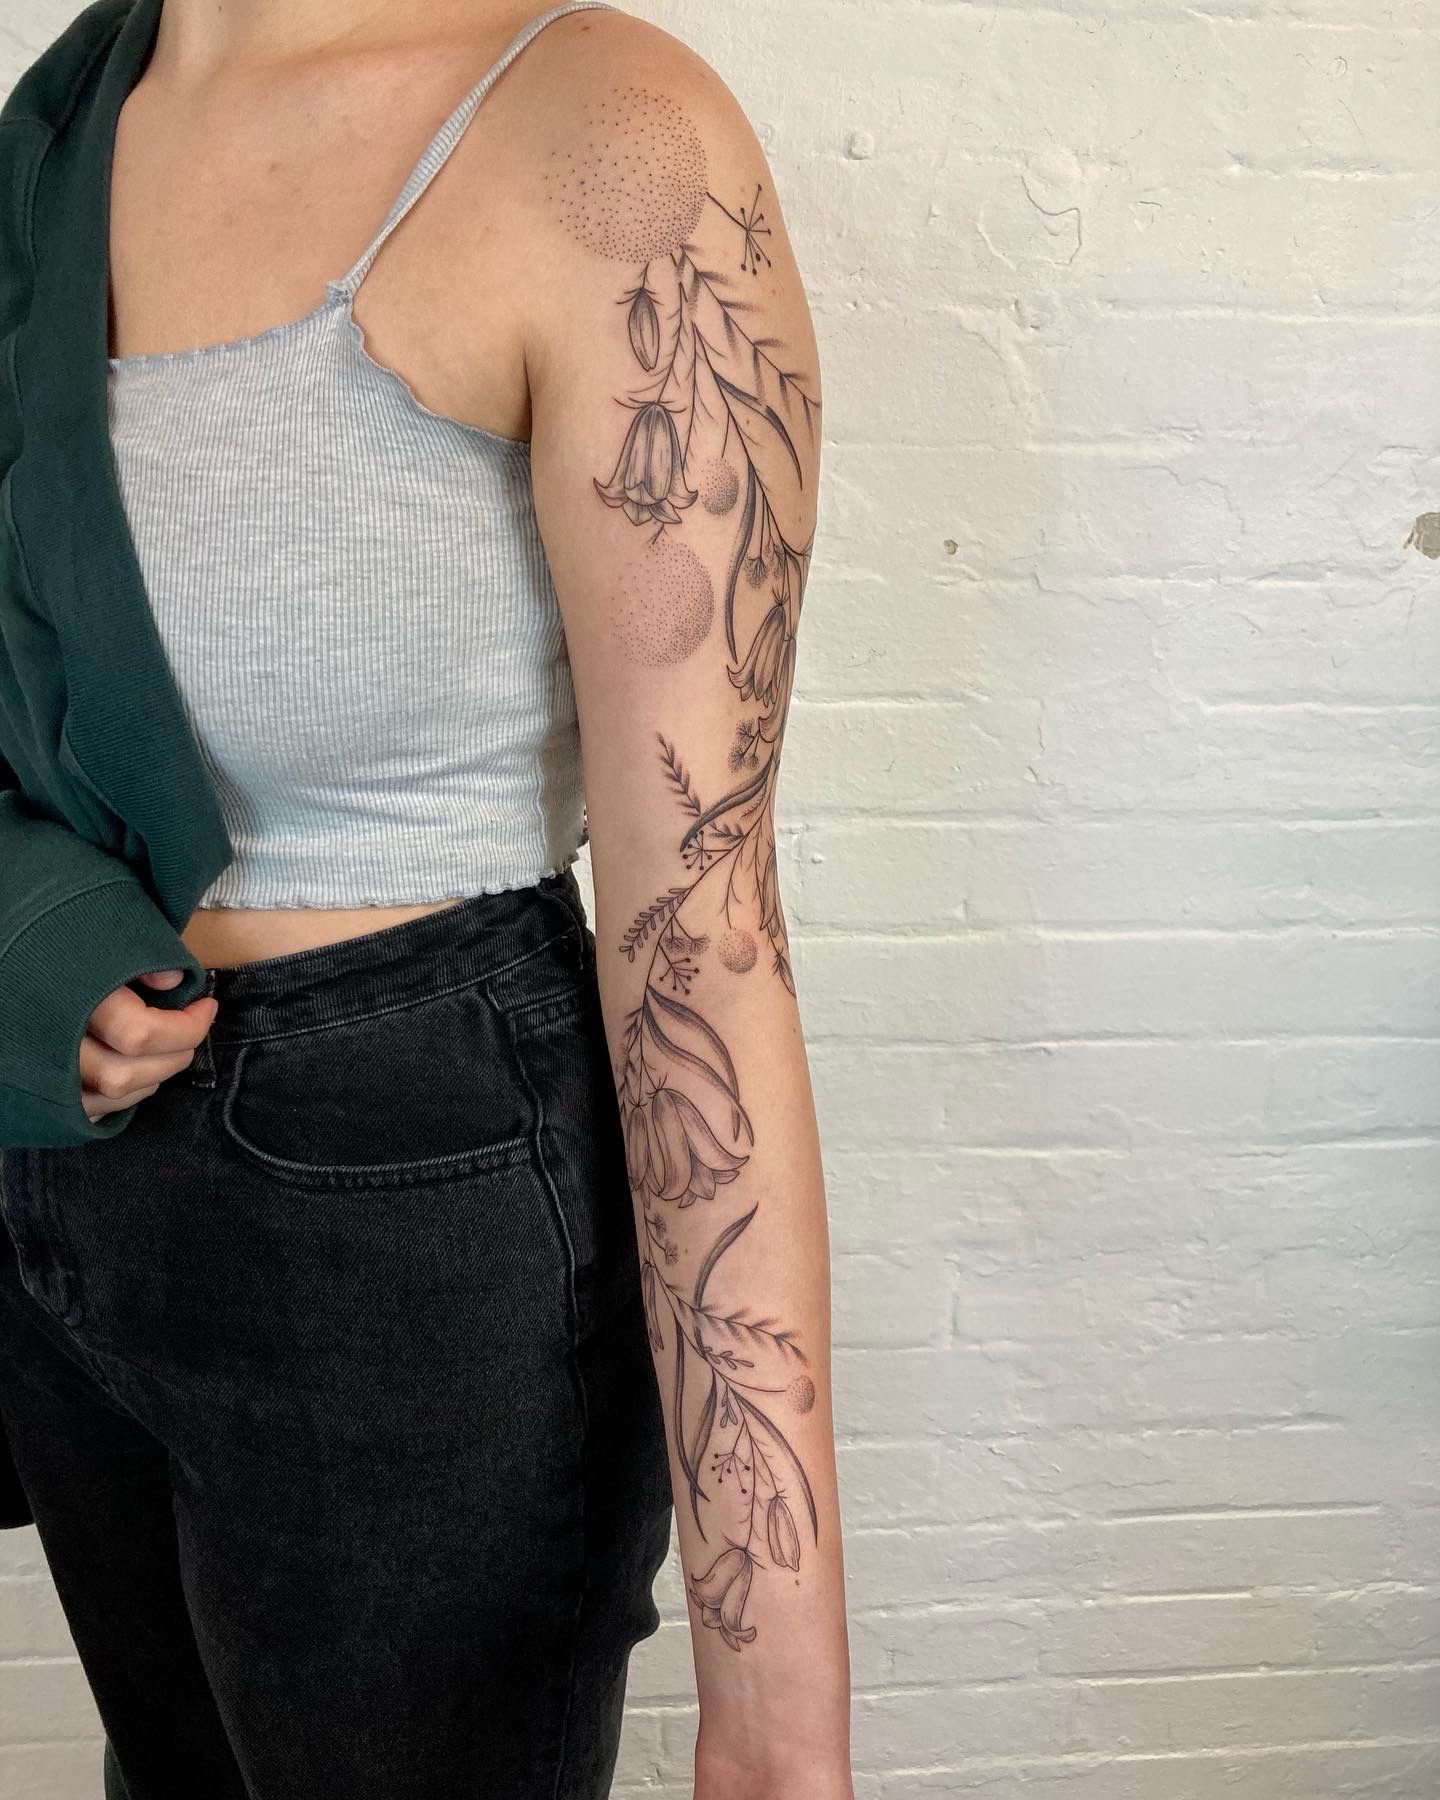 Premium PSD  Woman having tattoo mockup